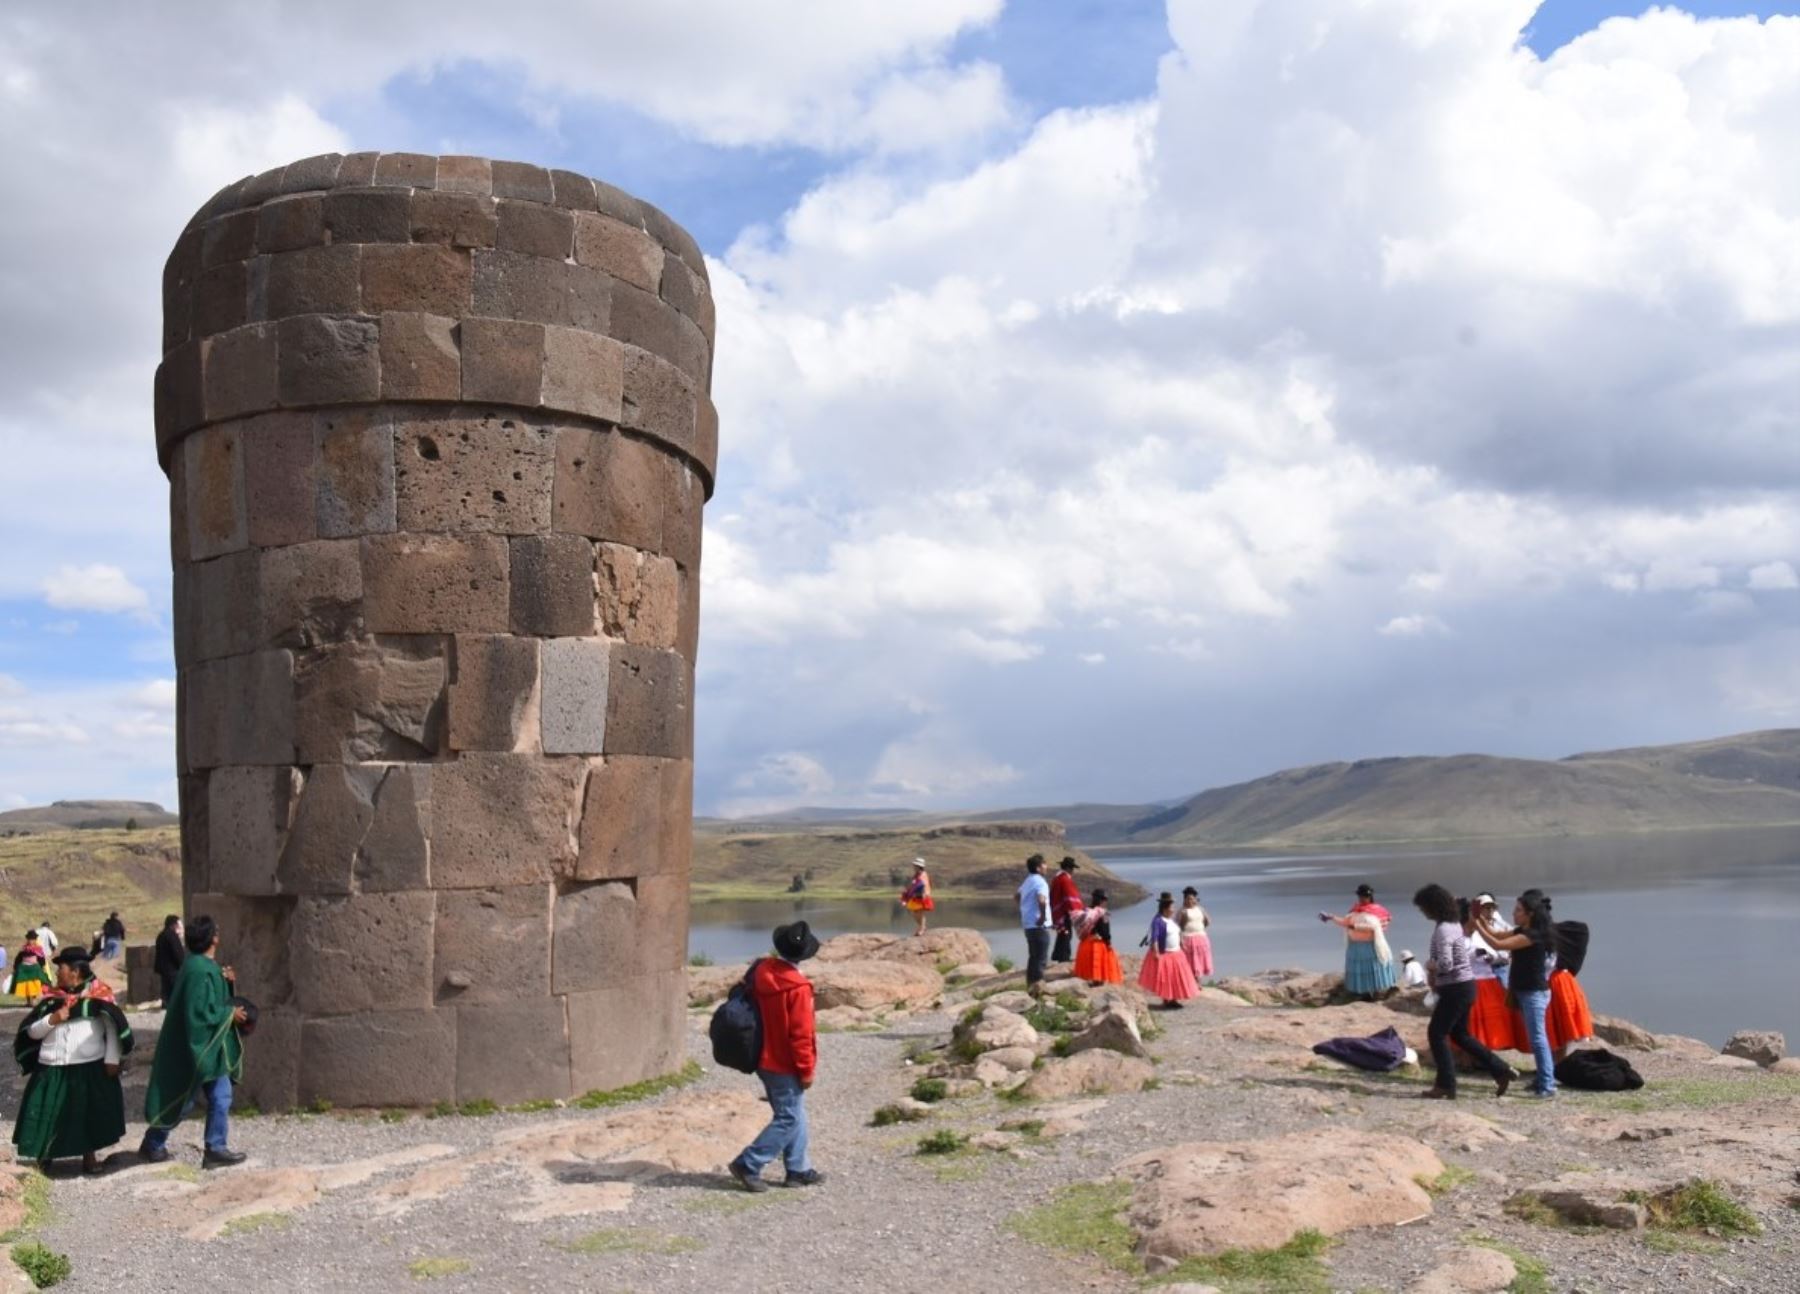 El complejo arqueológico Sillustani, uno de los destinos emblemáticos de Puno, será uno de los primeros en reanudar su atención al público pospandemia.